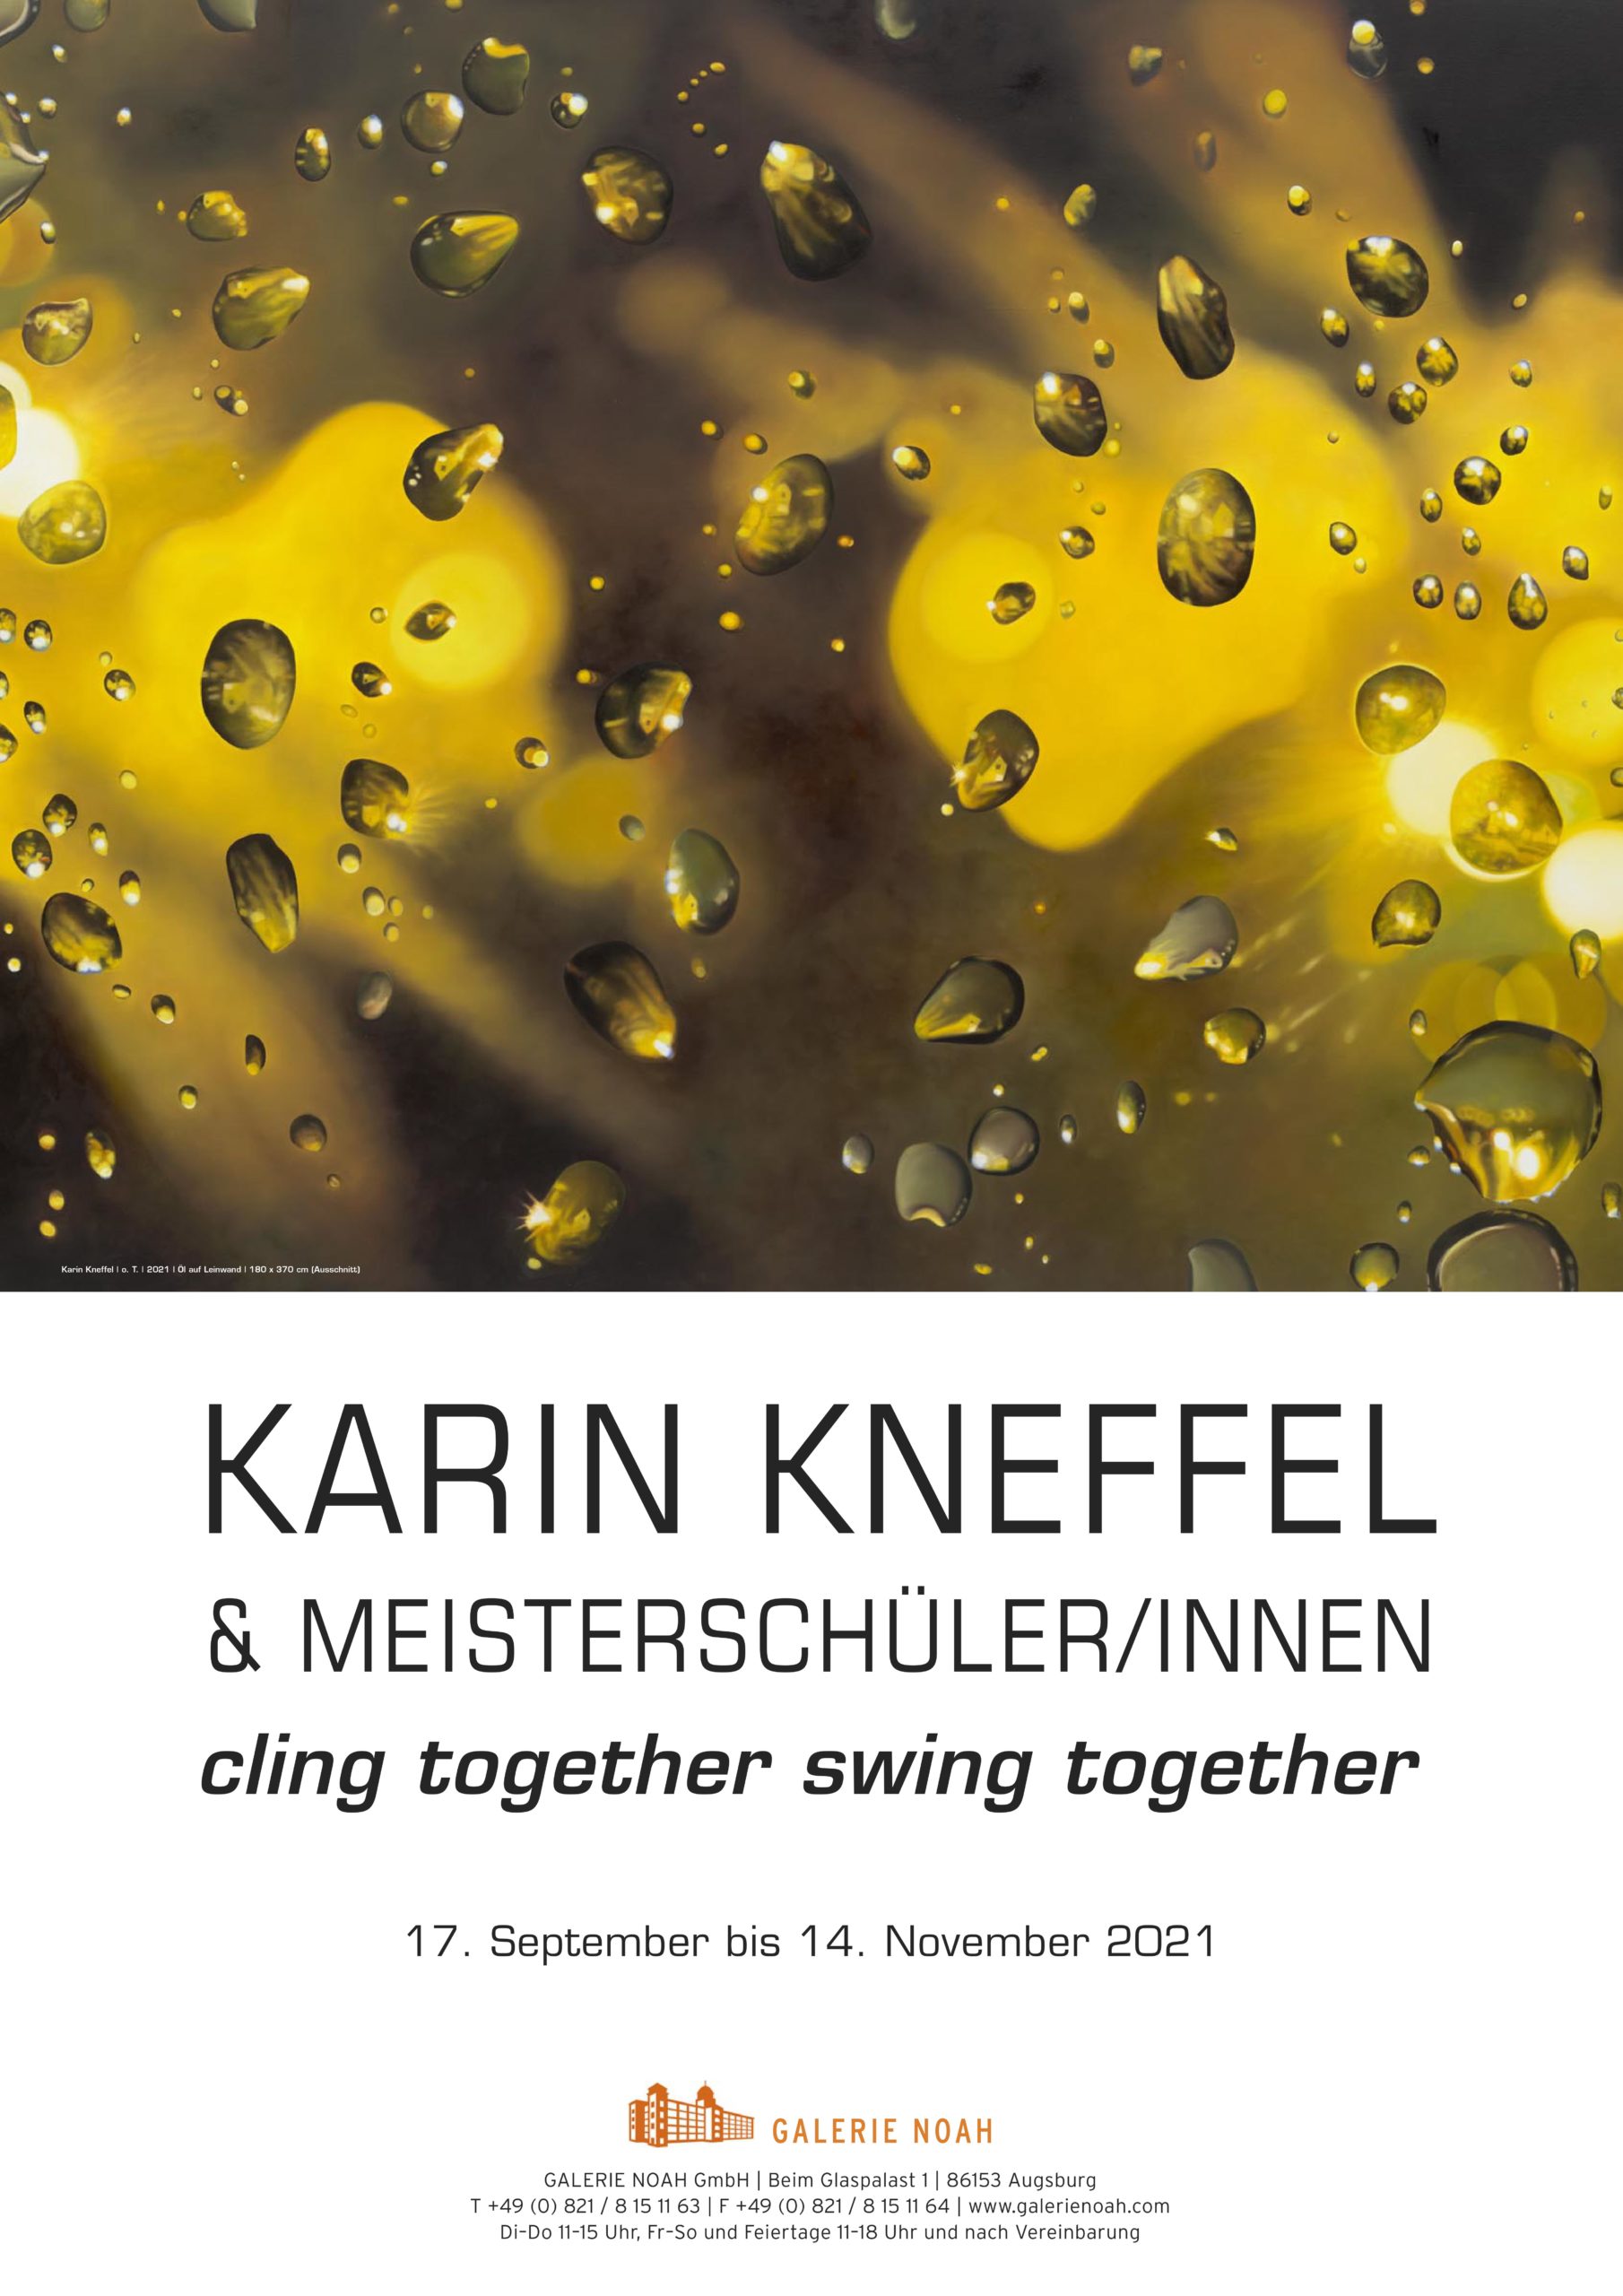 Karin Kneffel & Meisterschüler/innen